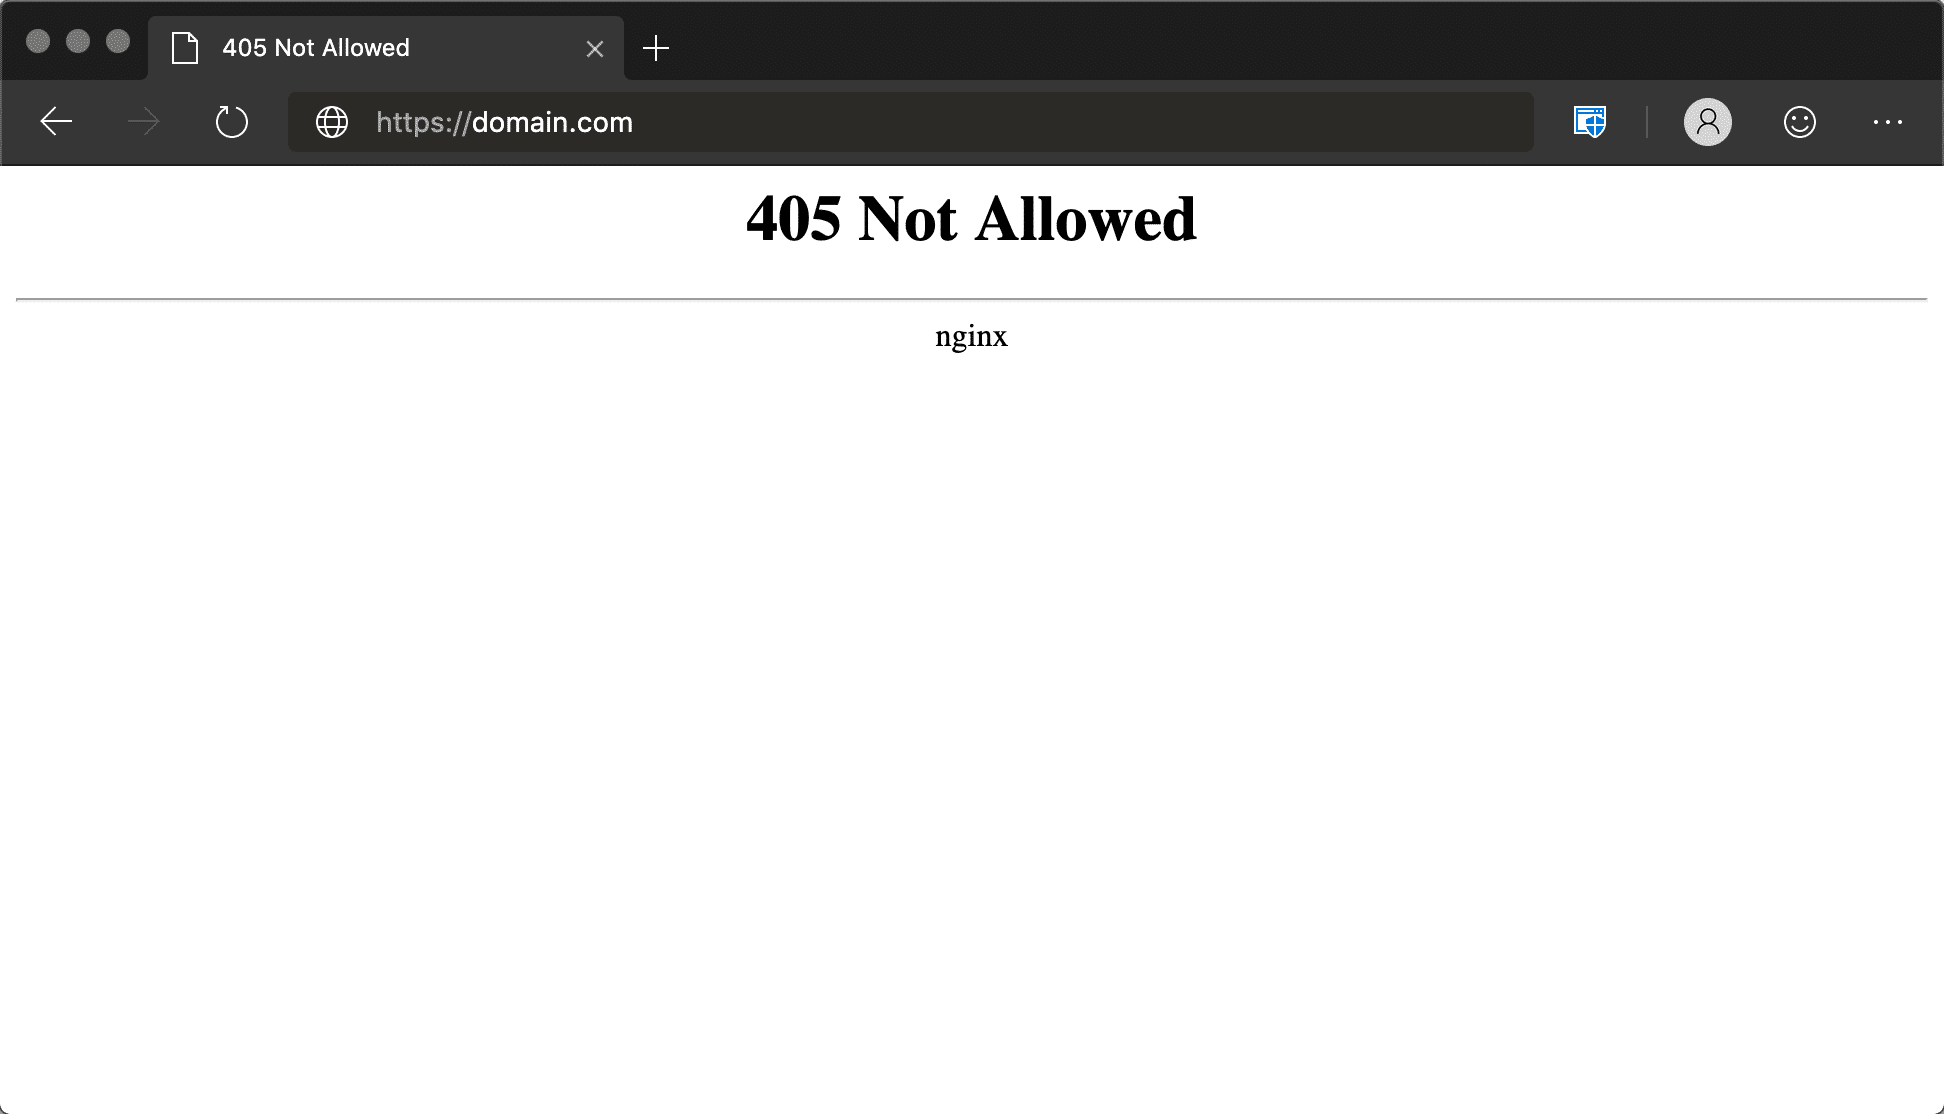 Microsoft Edgeの405 Not Allowedエラー（Nginx）画面